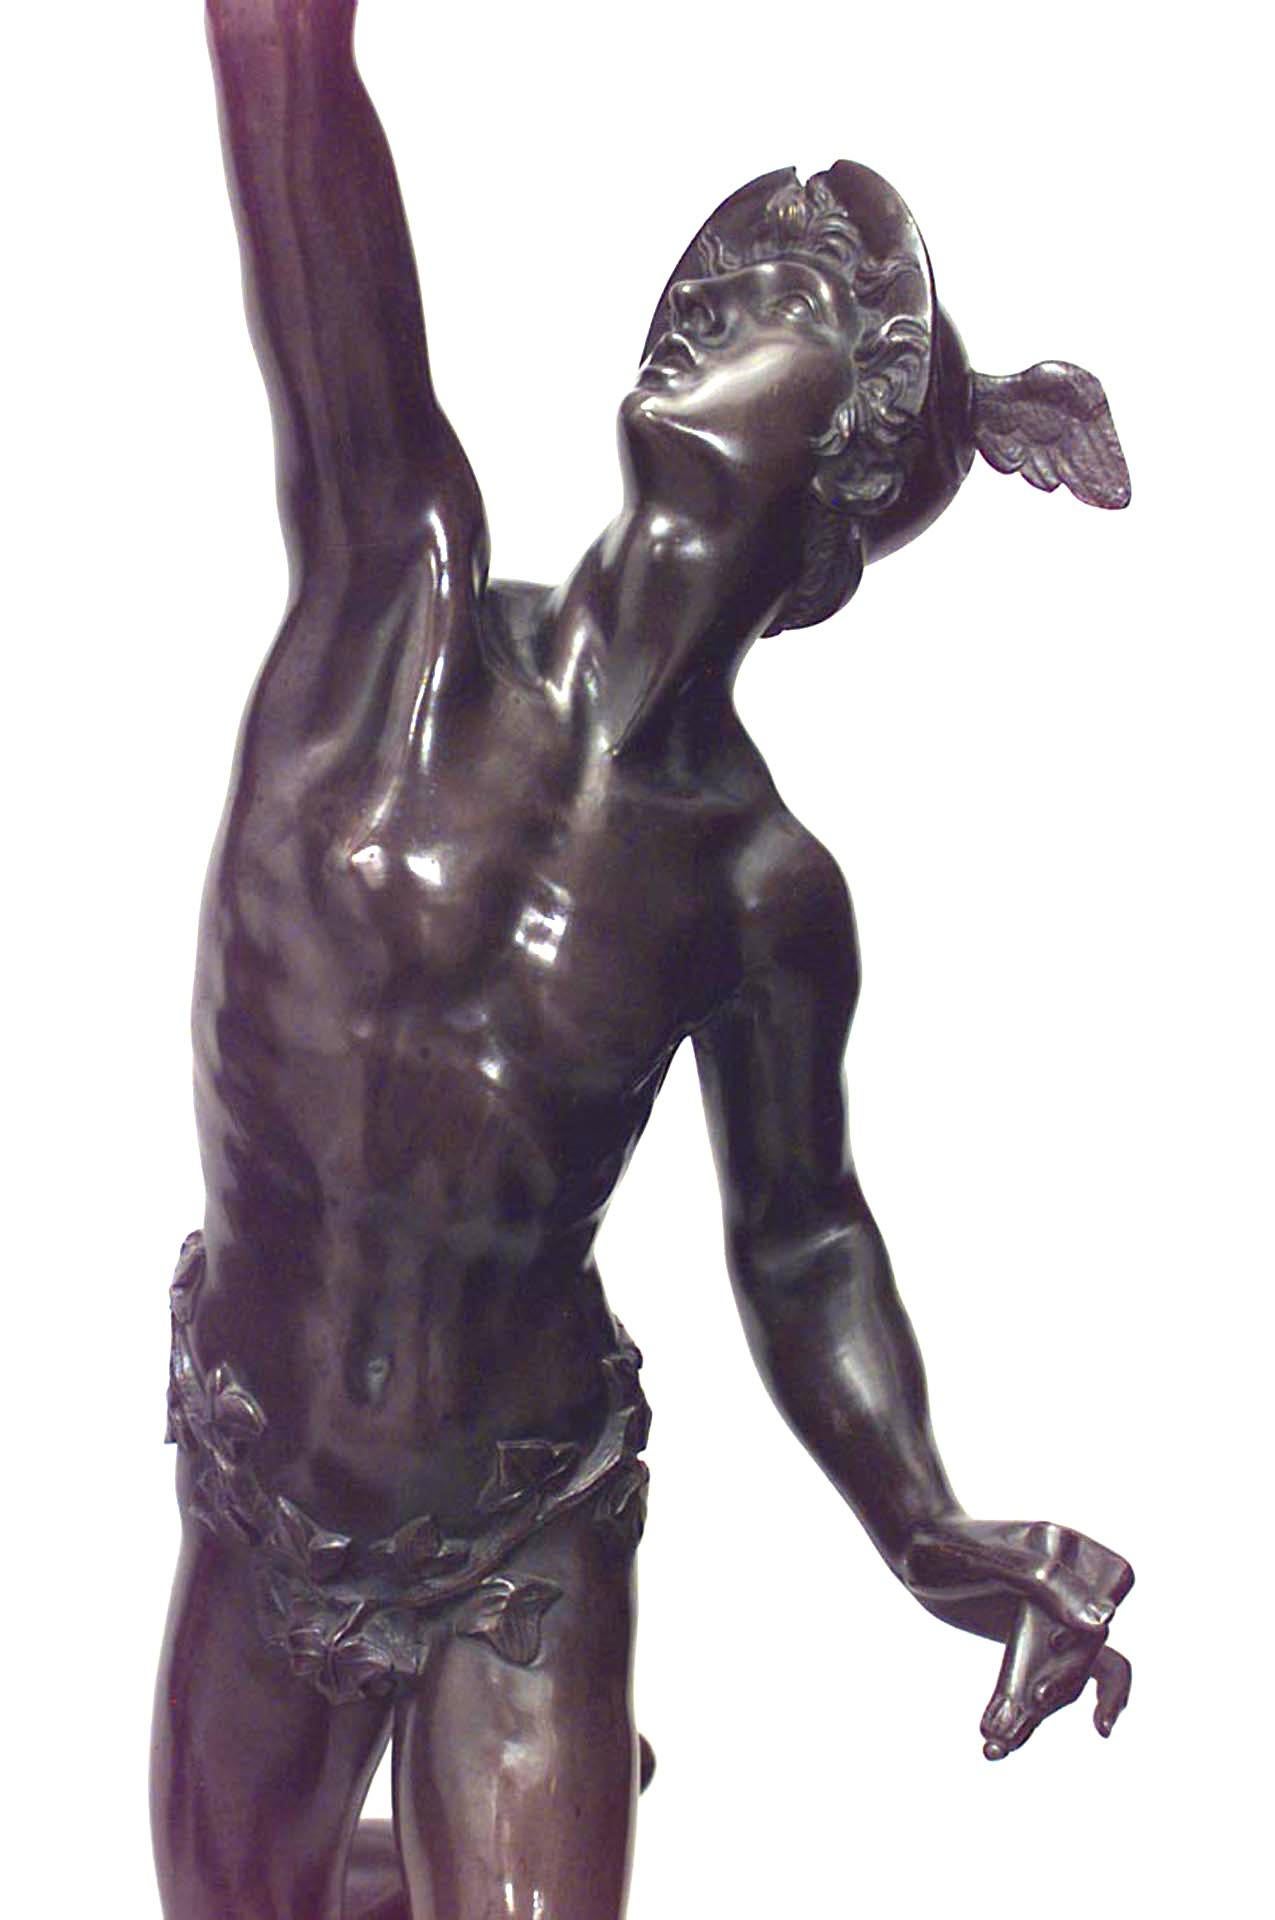 Paire de figures en bronze de style néoclassique italien (XIXe siècle) représentant Cérès et Mercure sur des socles avec des scènes en relief en bronze et du marbre noir
